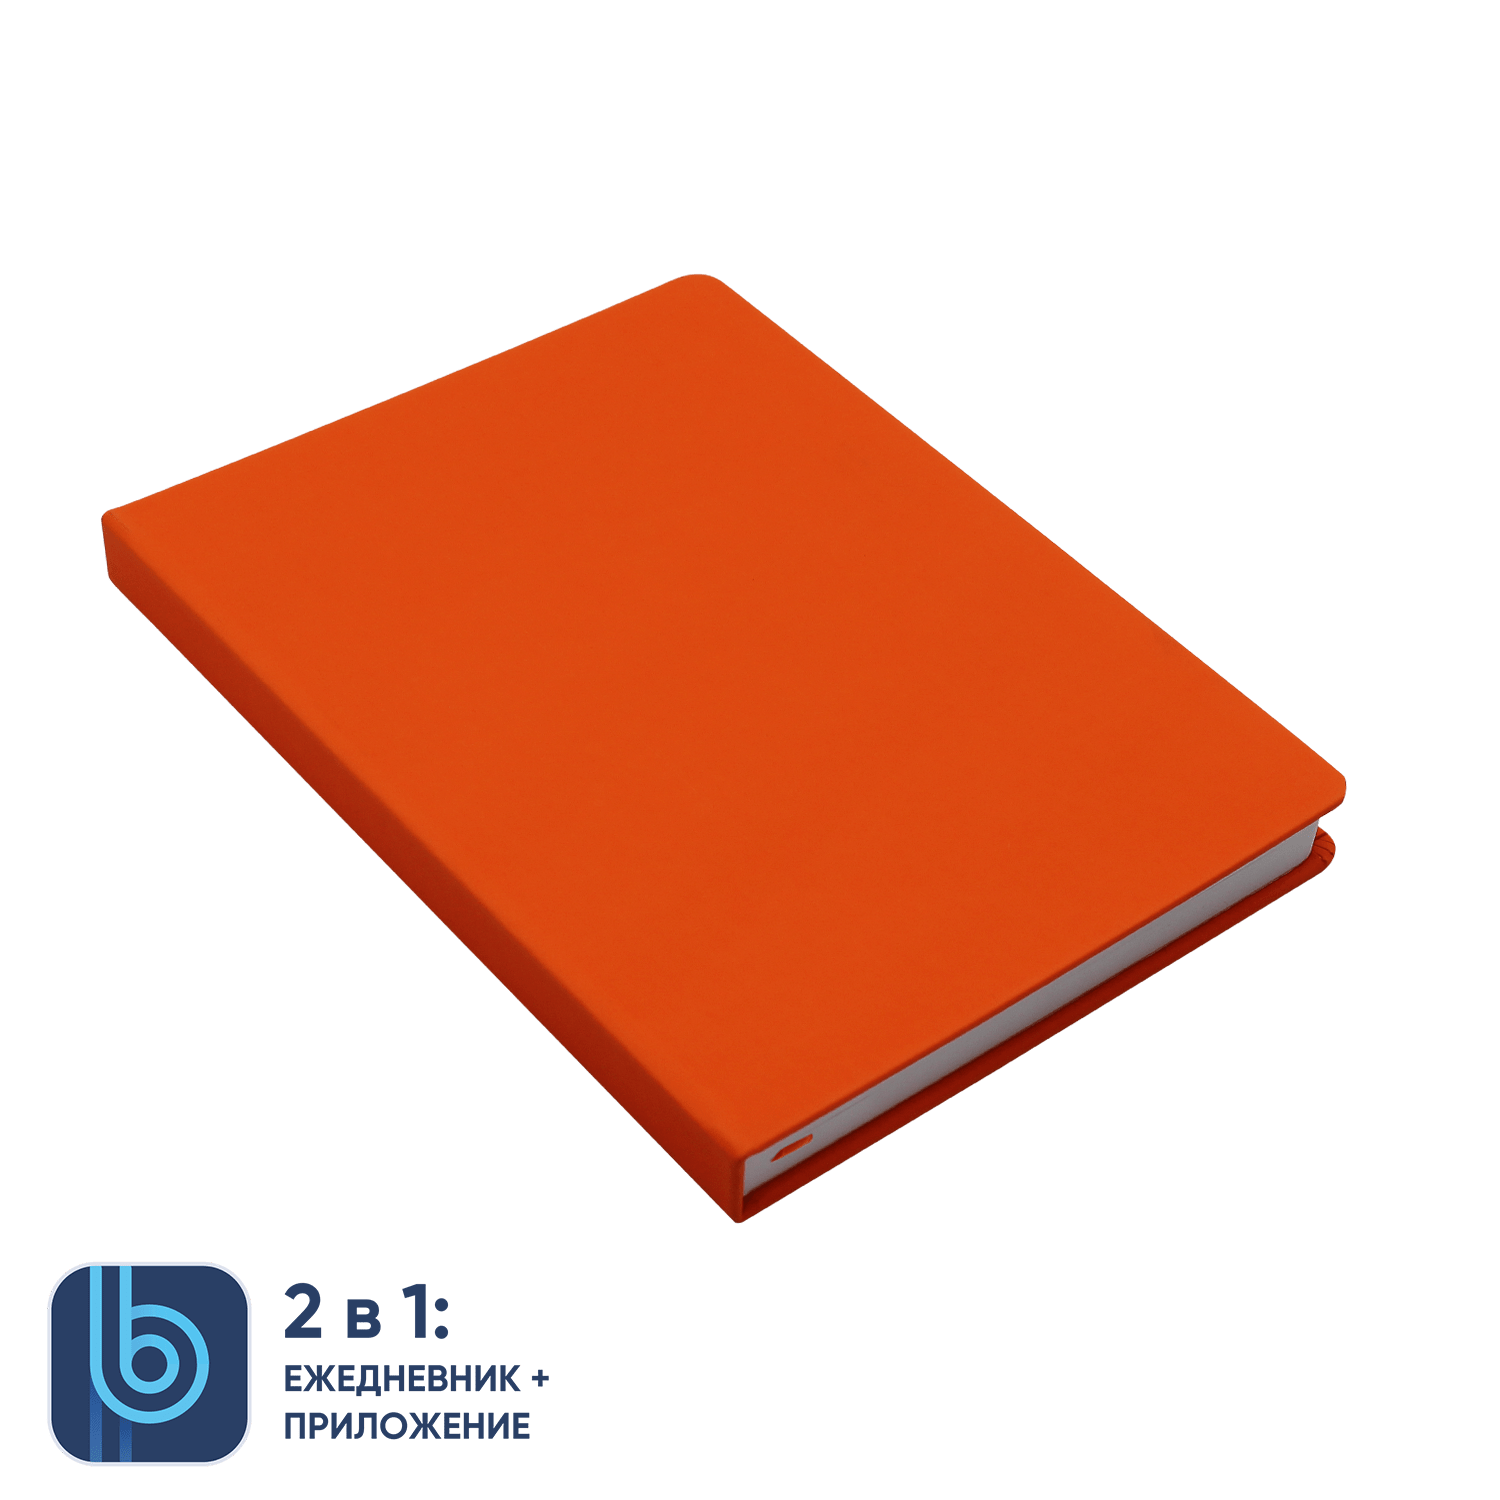 Ежедневник Bplanner.02 orange (оранжевый), оранжевый, soft touch